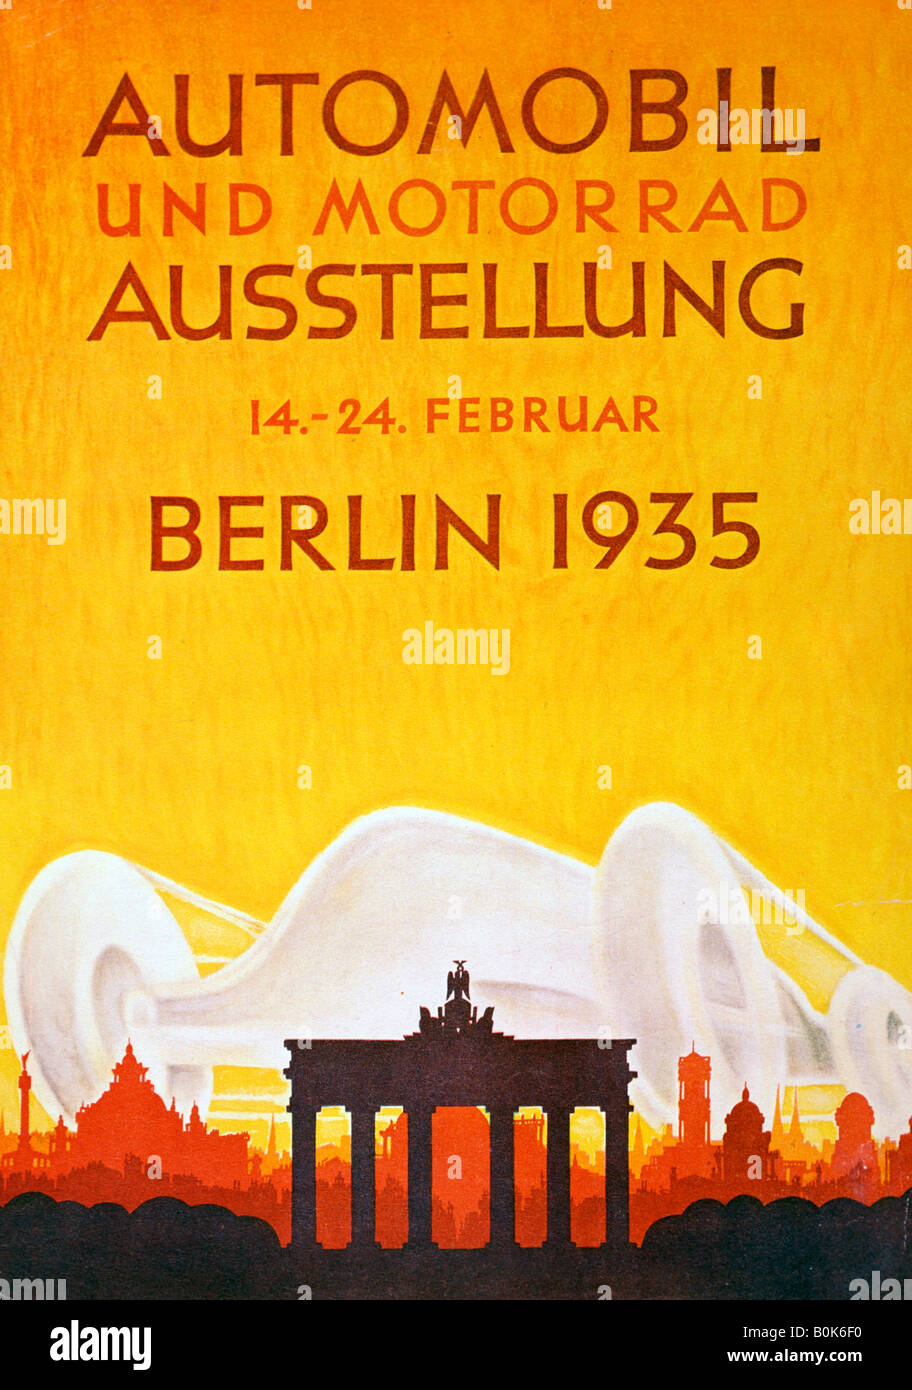 Affiche annonçant l'exposition d'automobiles et de motos à Berlin, février 1935. Artiste : Inconnu Banque D'Images